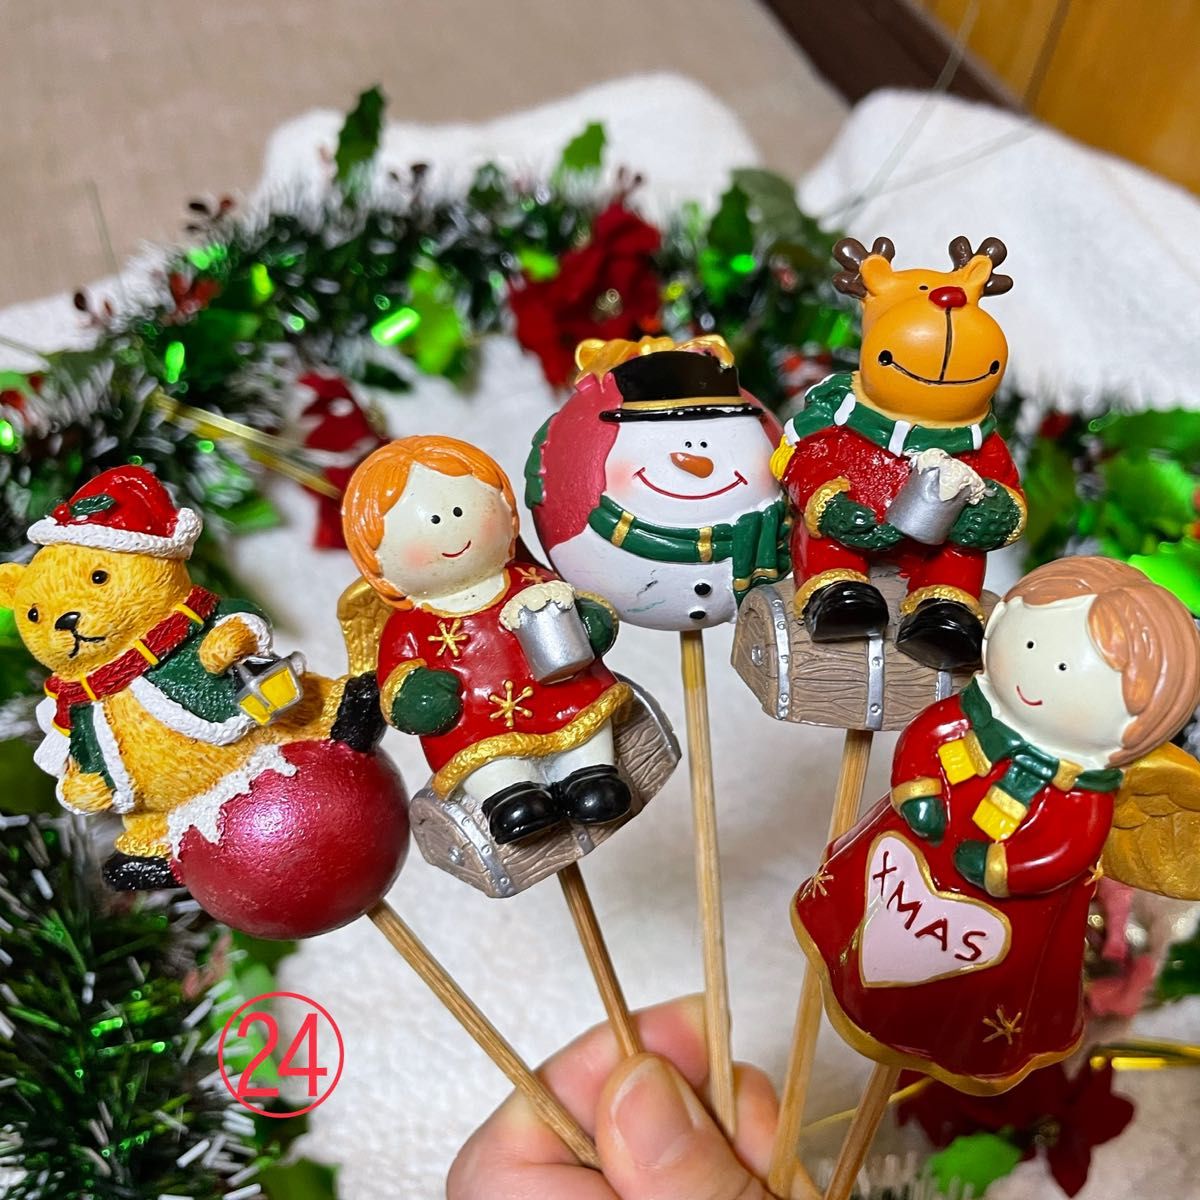 24 クリスマスピック ガーデンピック オブジェ 置き物 サンタ トナカイ 飾り ツリー  スノーマン オーナメント グッズ 雑貨